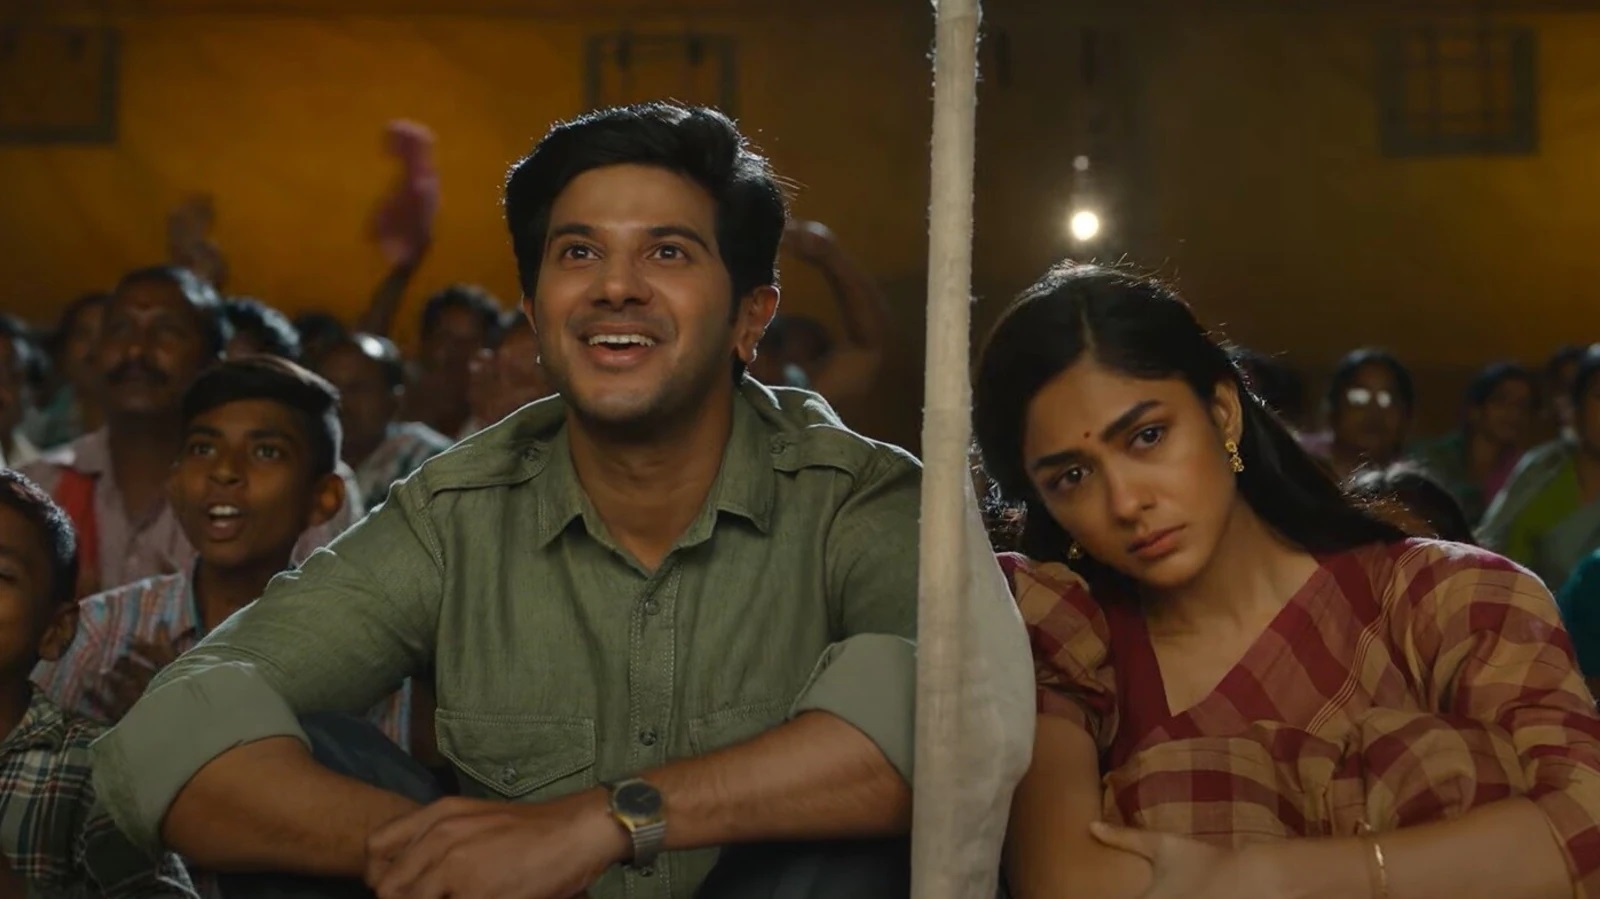 'سیتا رامم' کے جائزے: دیکھیں کہ سامعین رشمیکا منڈنا کی نئی فلم کے بارے میں کیا کہتے ہیں۔